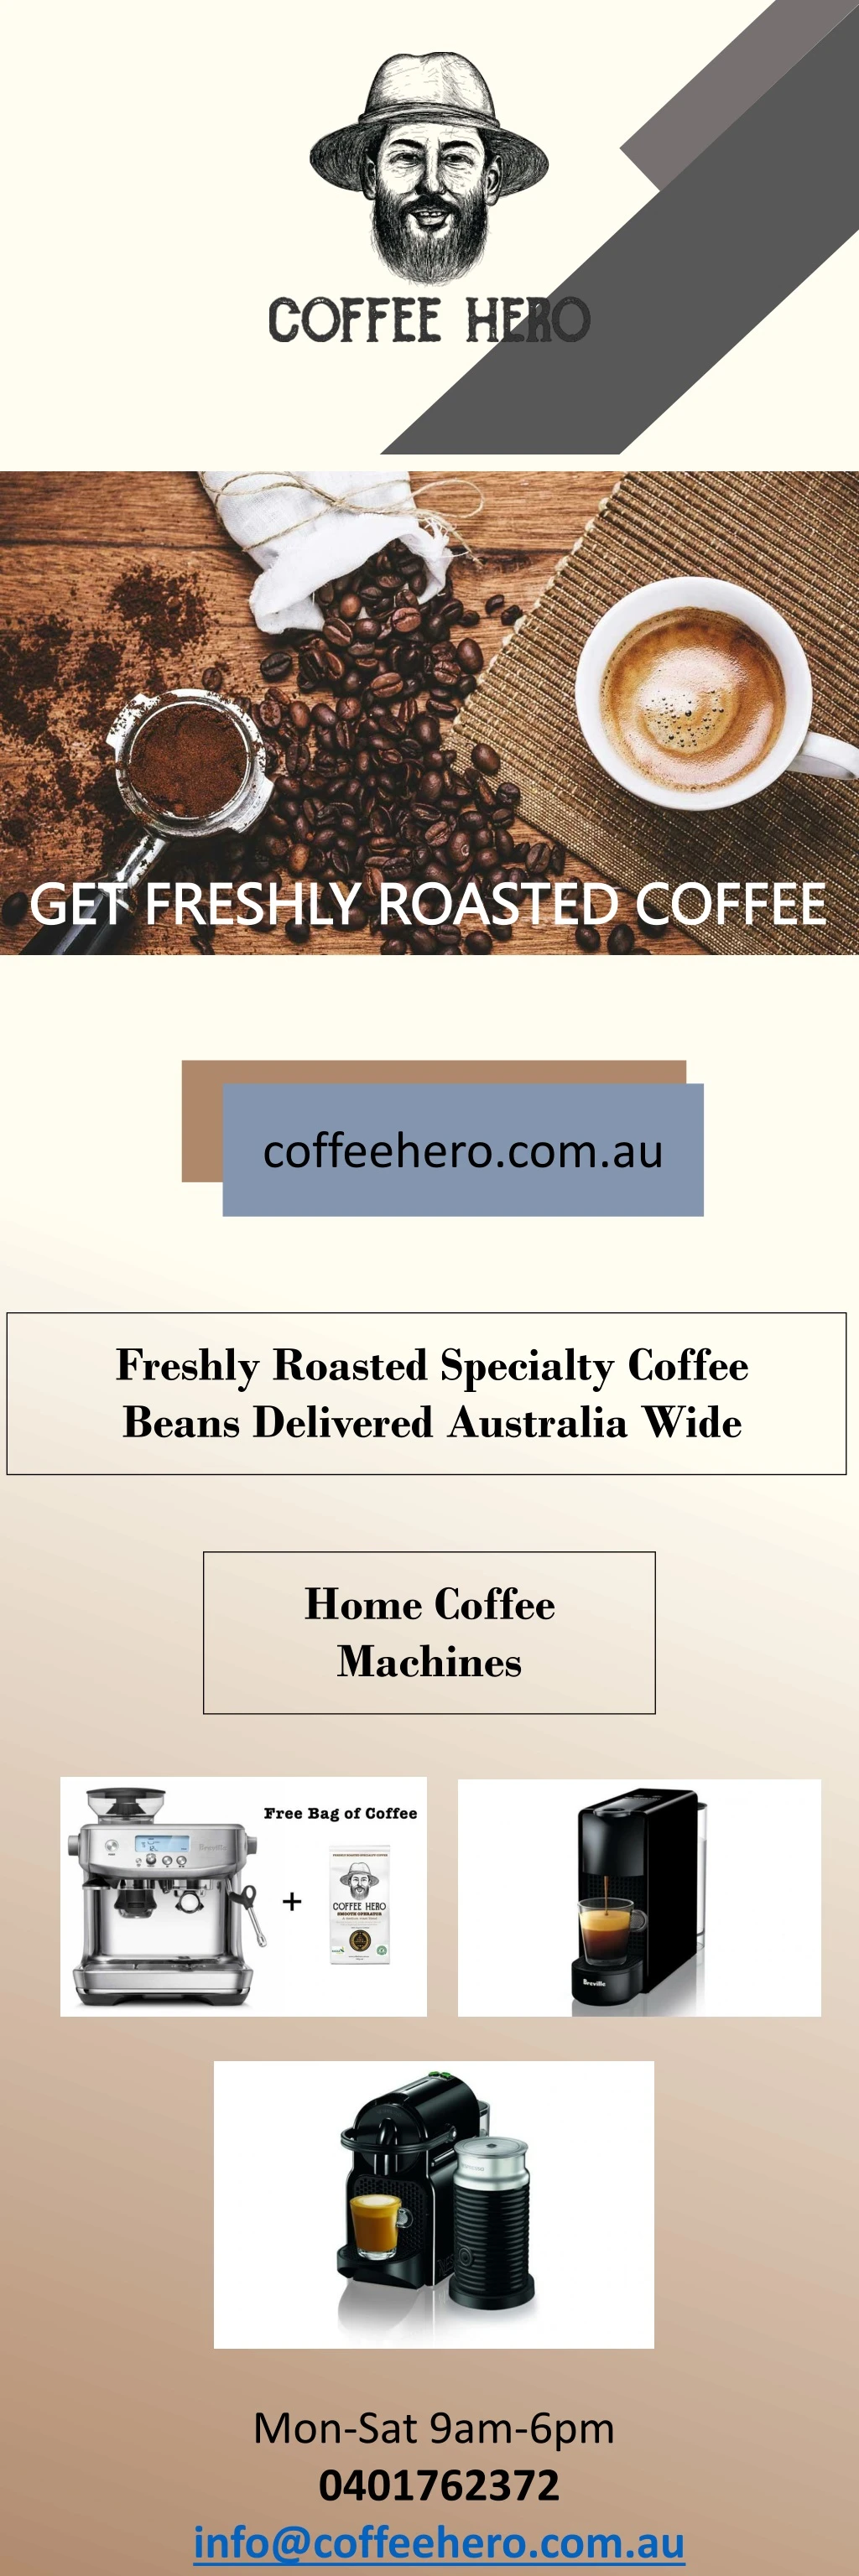 get freshly roasted coffee